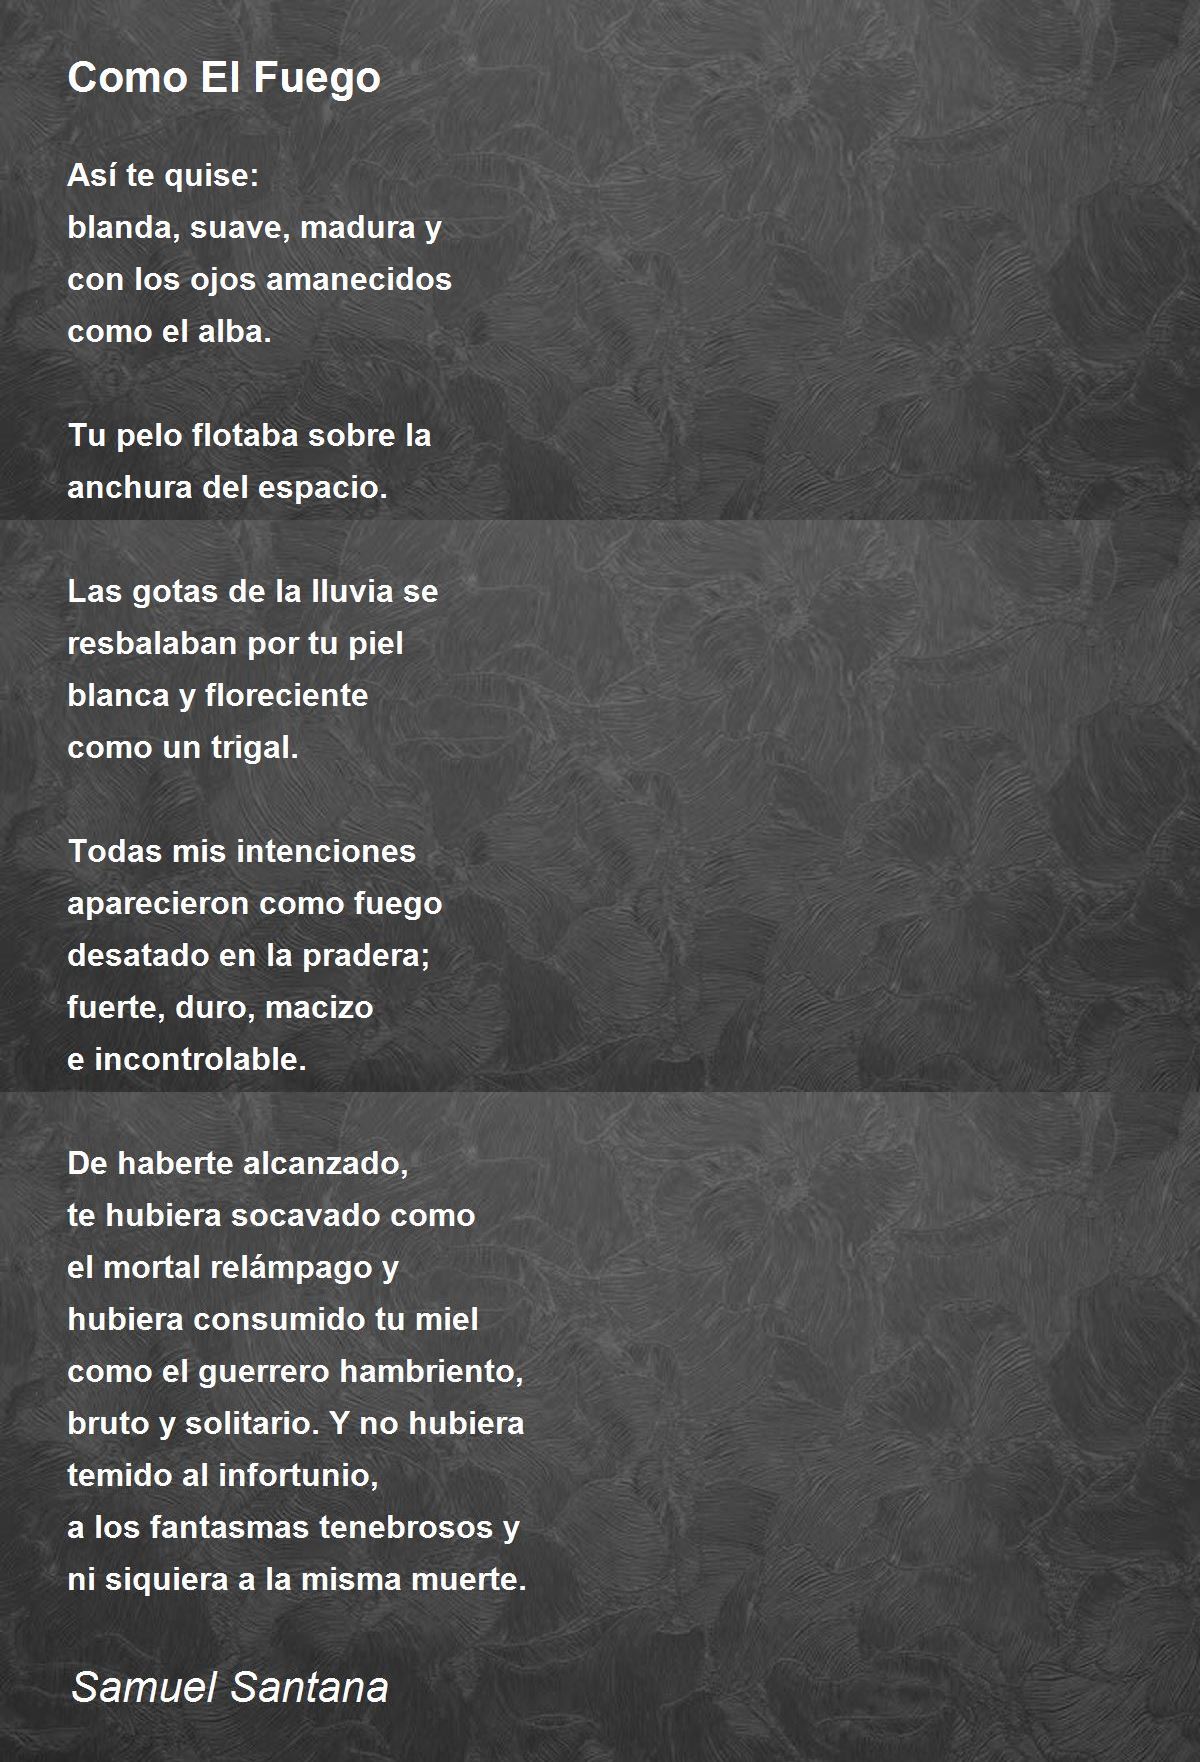 Como El Fuego by Samuel Santana - Como El Fuego Poem